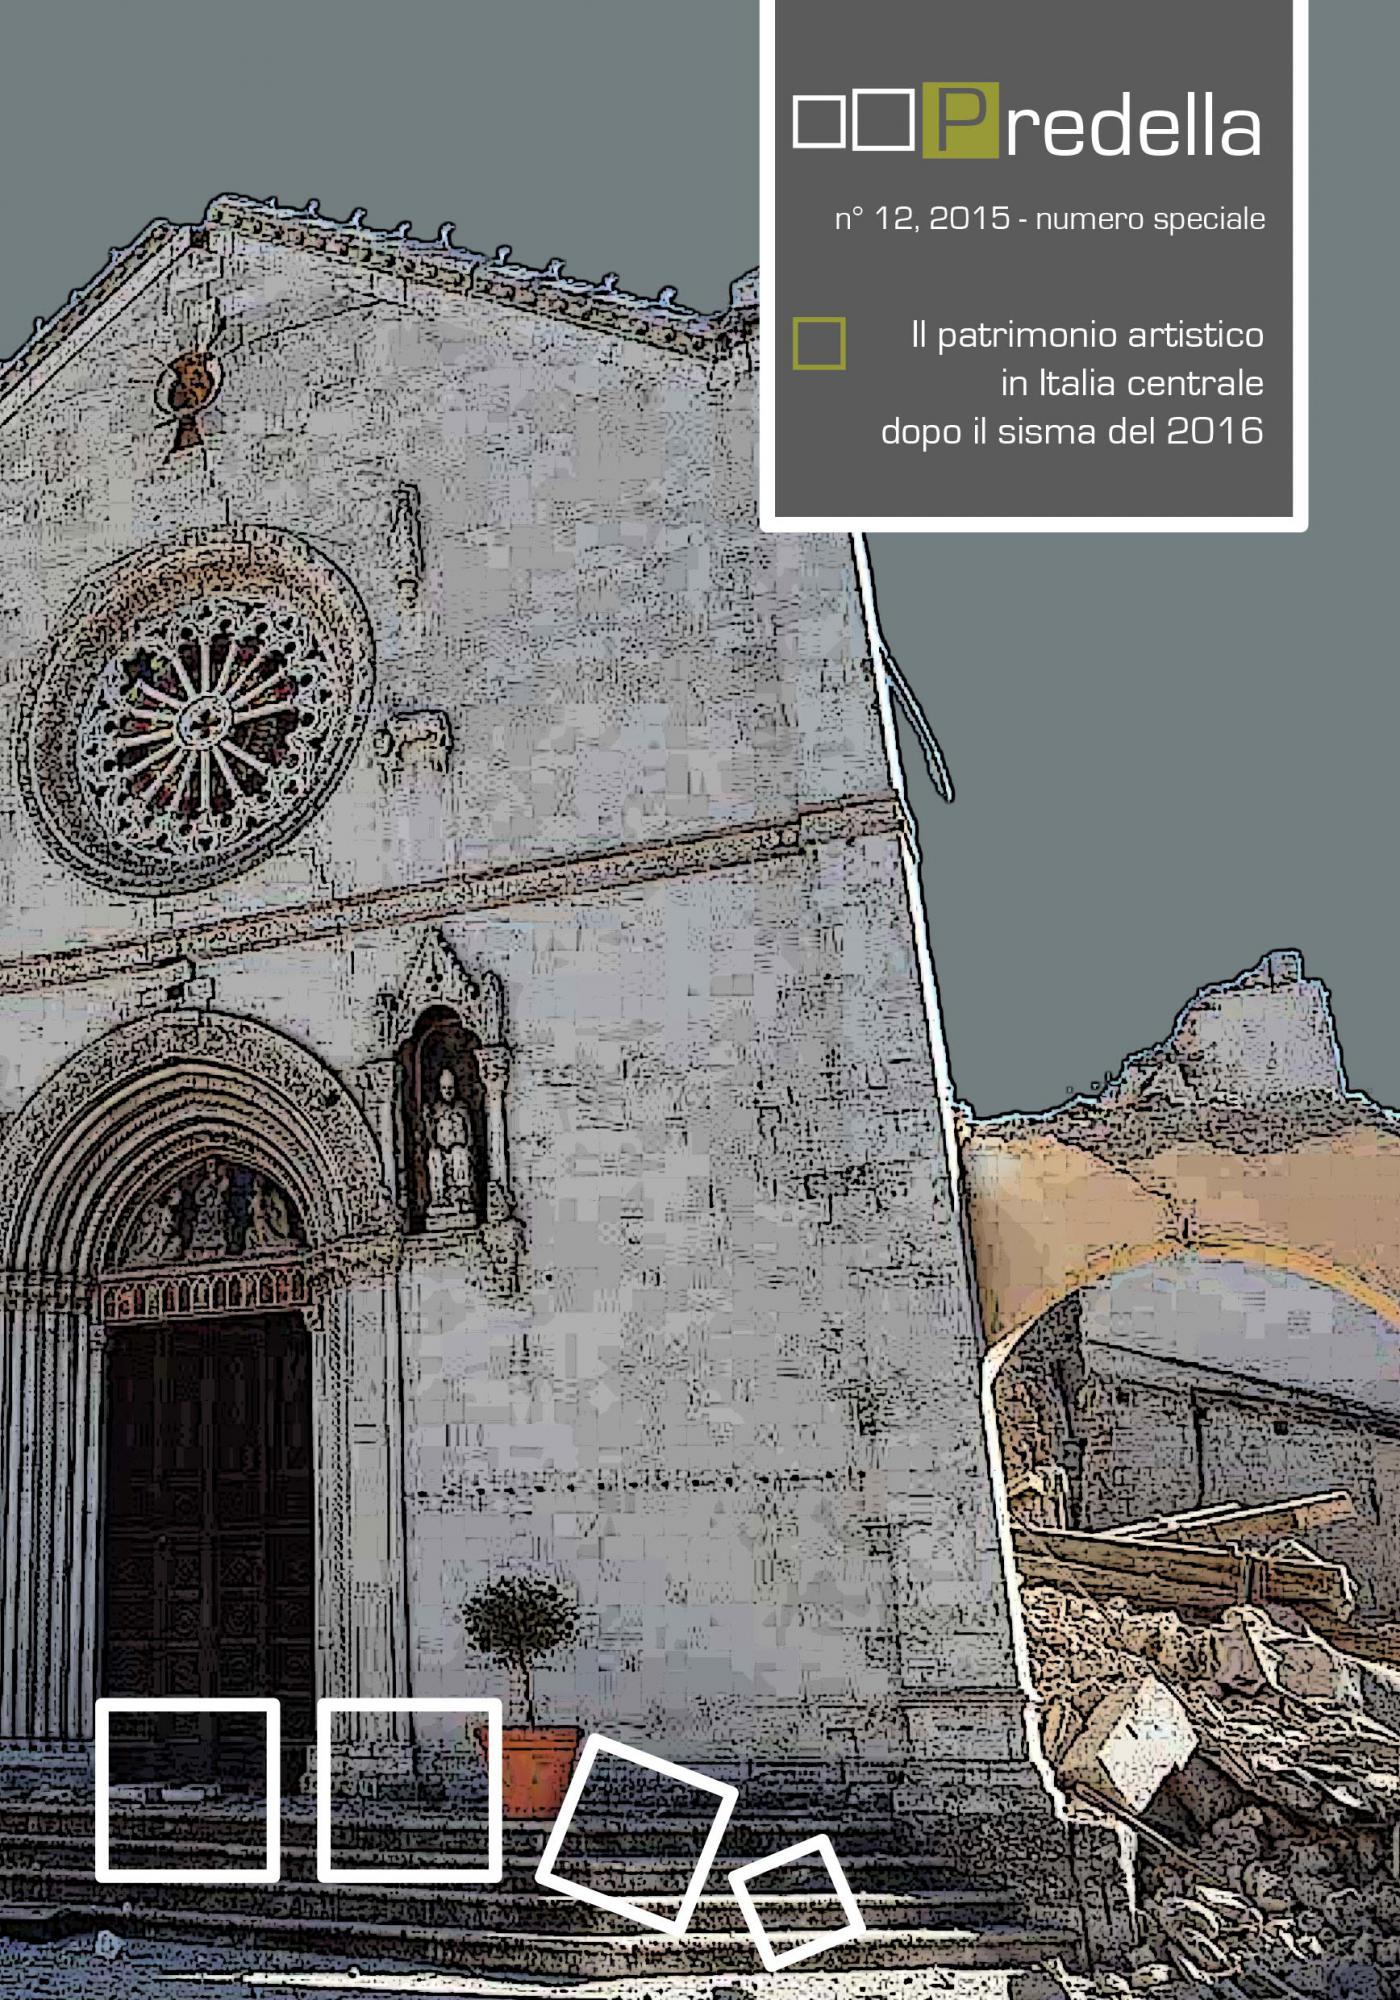 Il patrimonio artistico in Italia centrale dopo il sisma del 2016.predella / monografie, n° 12